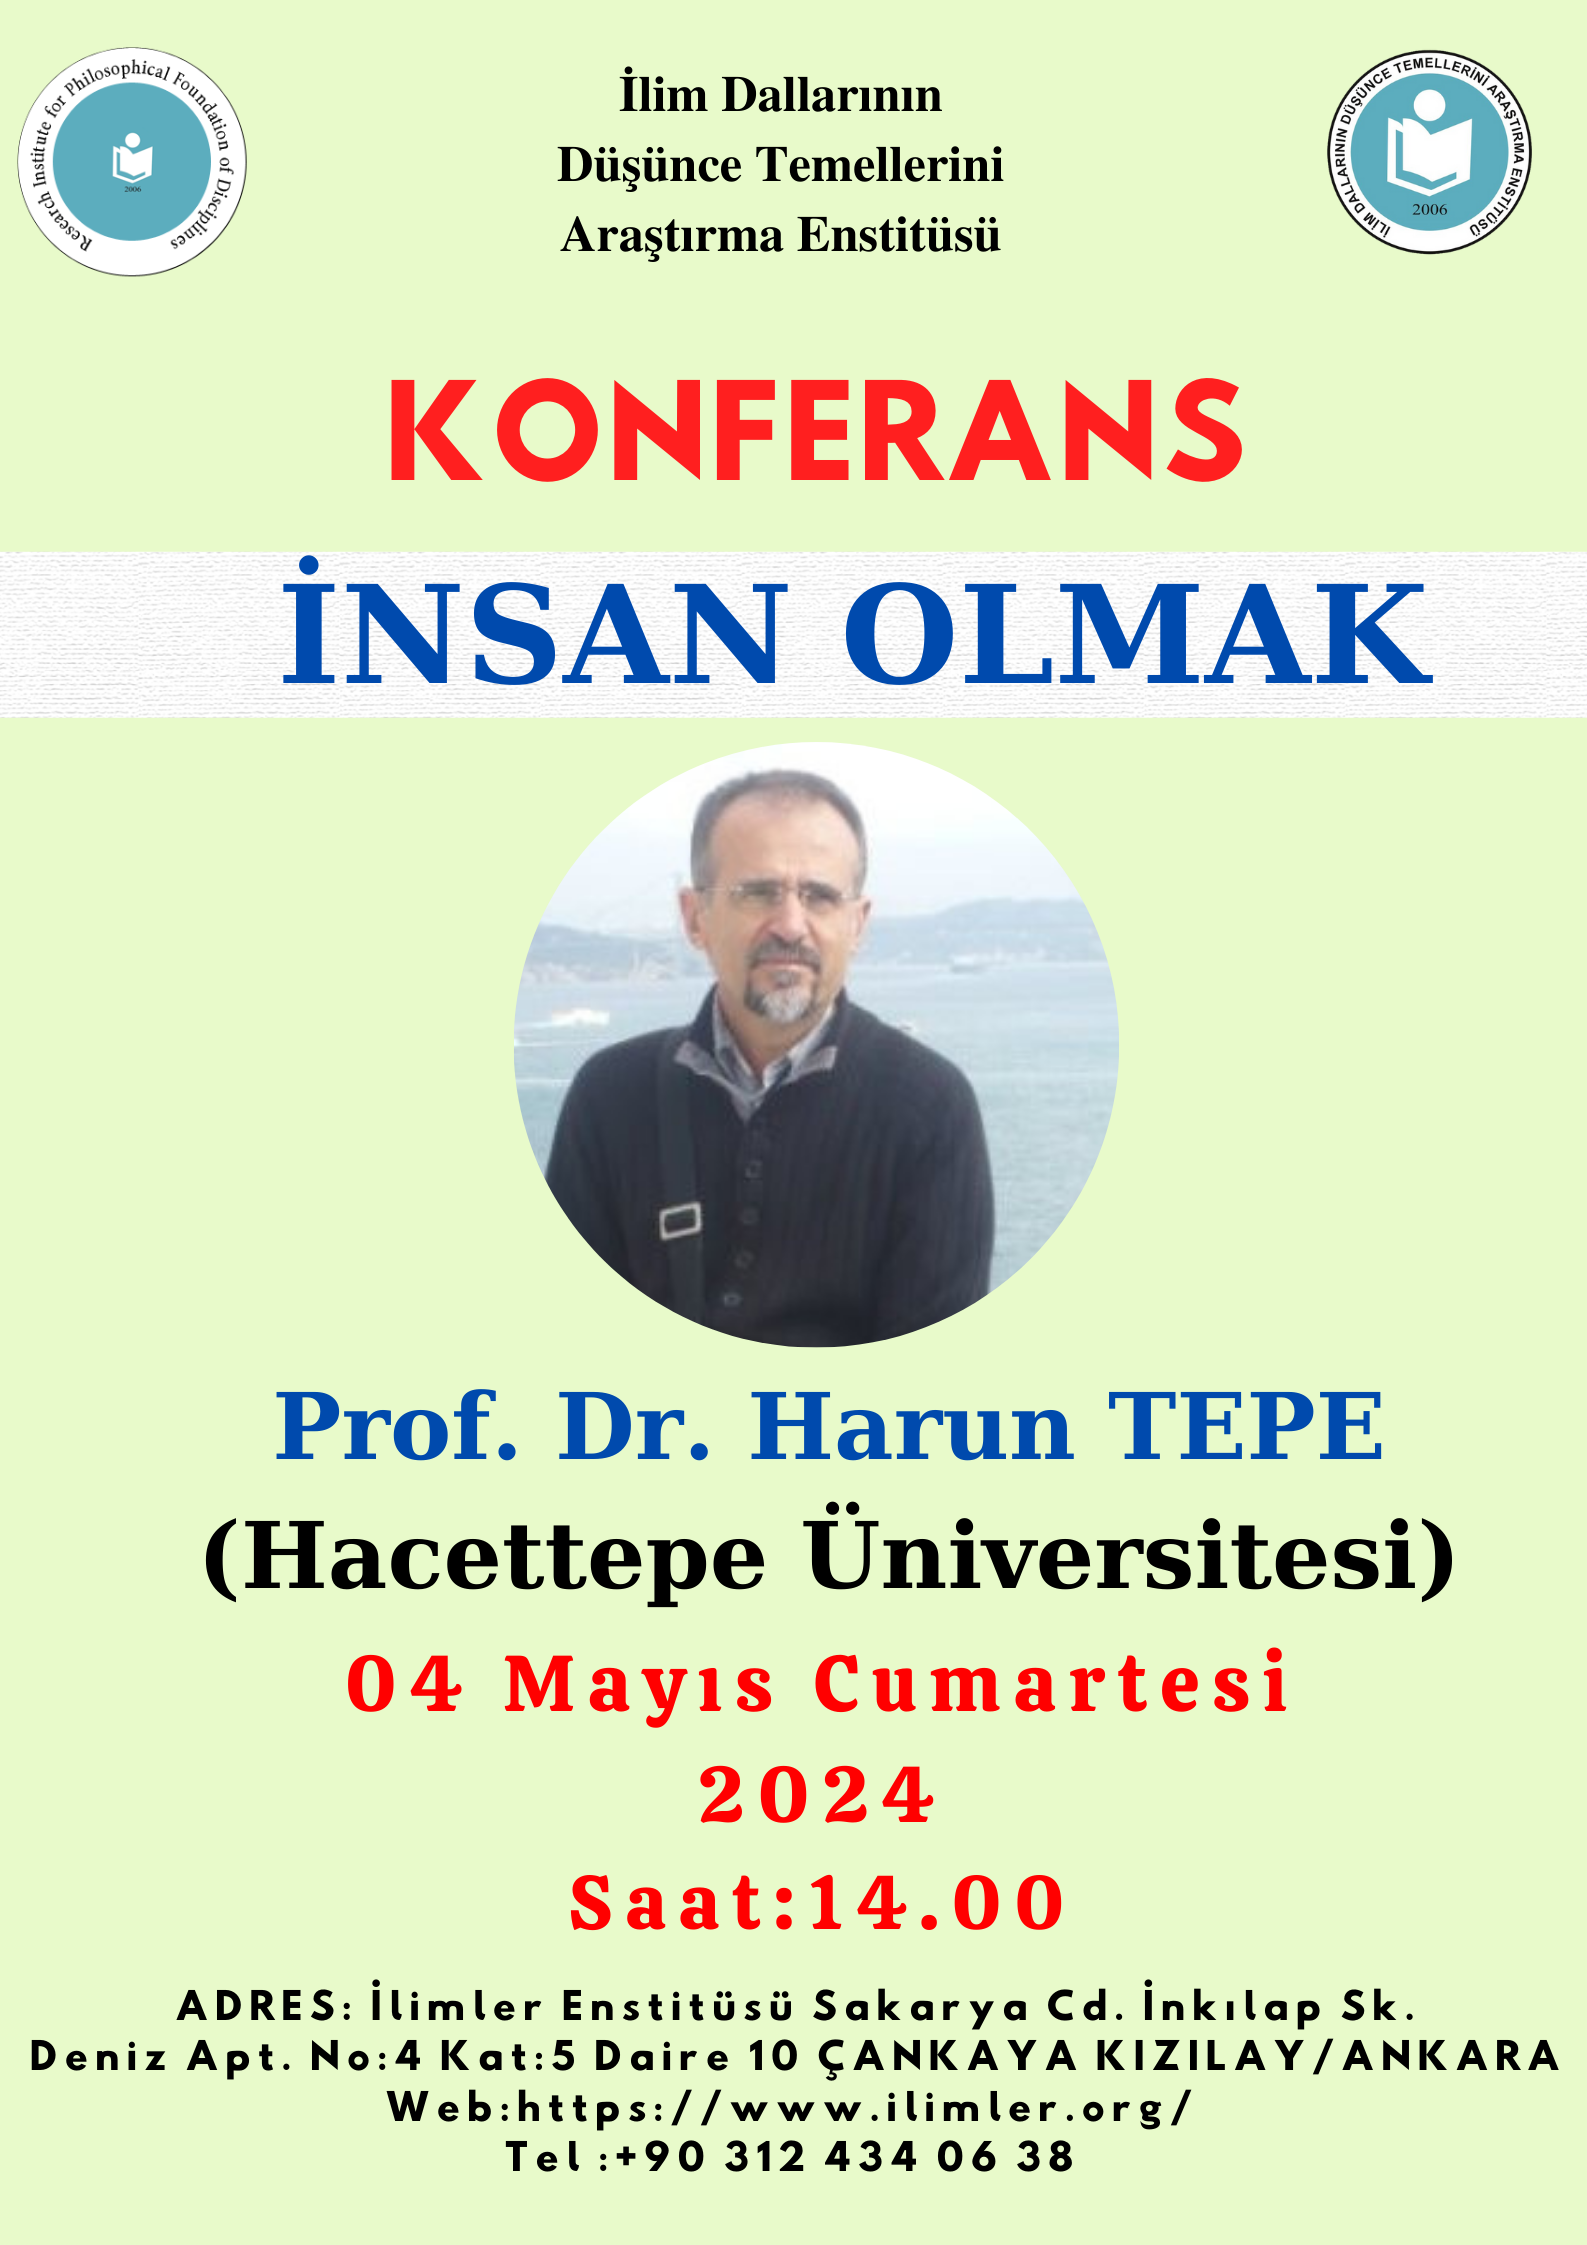 İnsan Olmak -Prof. Dr. Harun TEPE- 04.05.2024